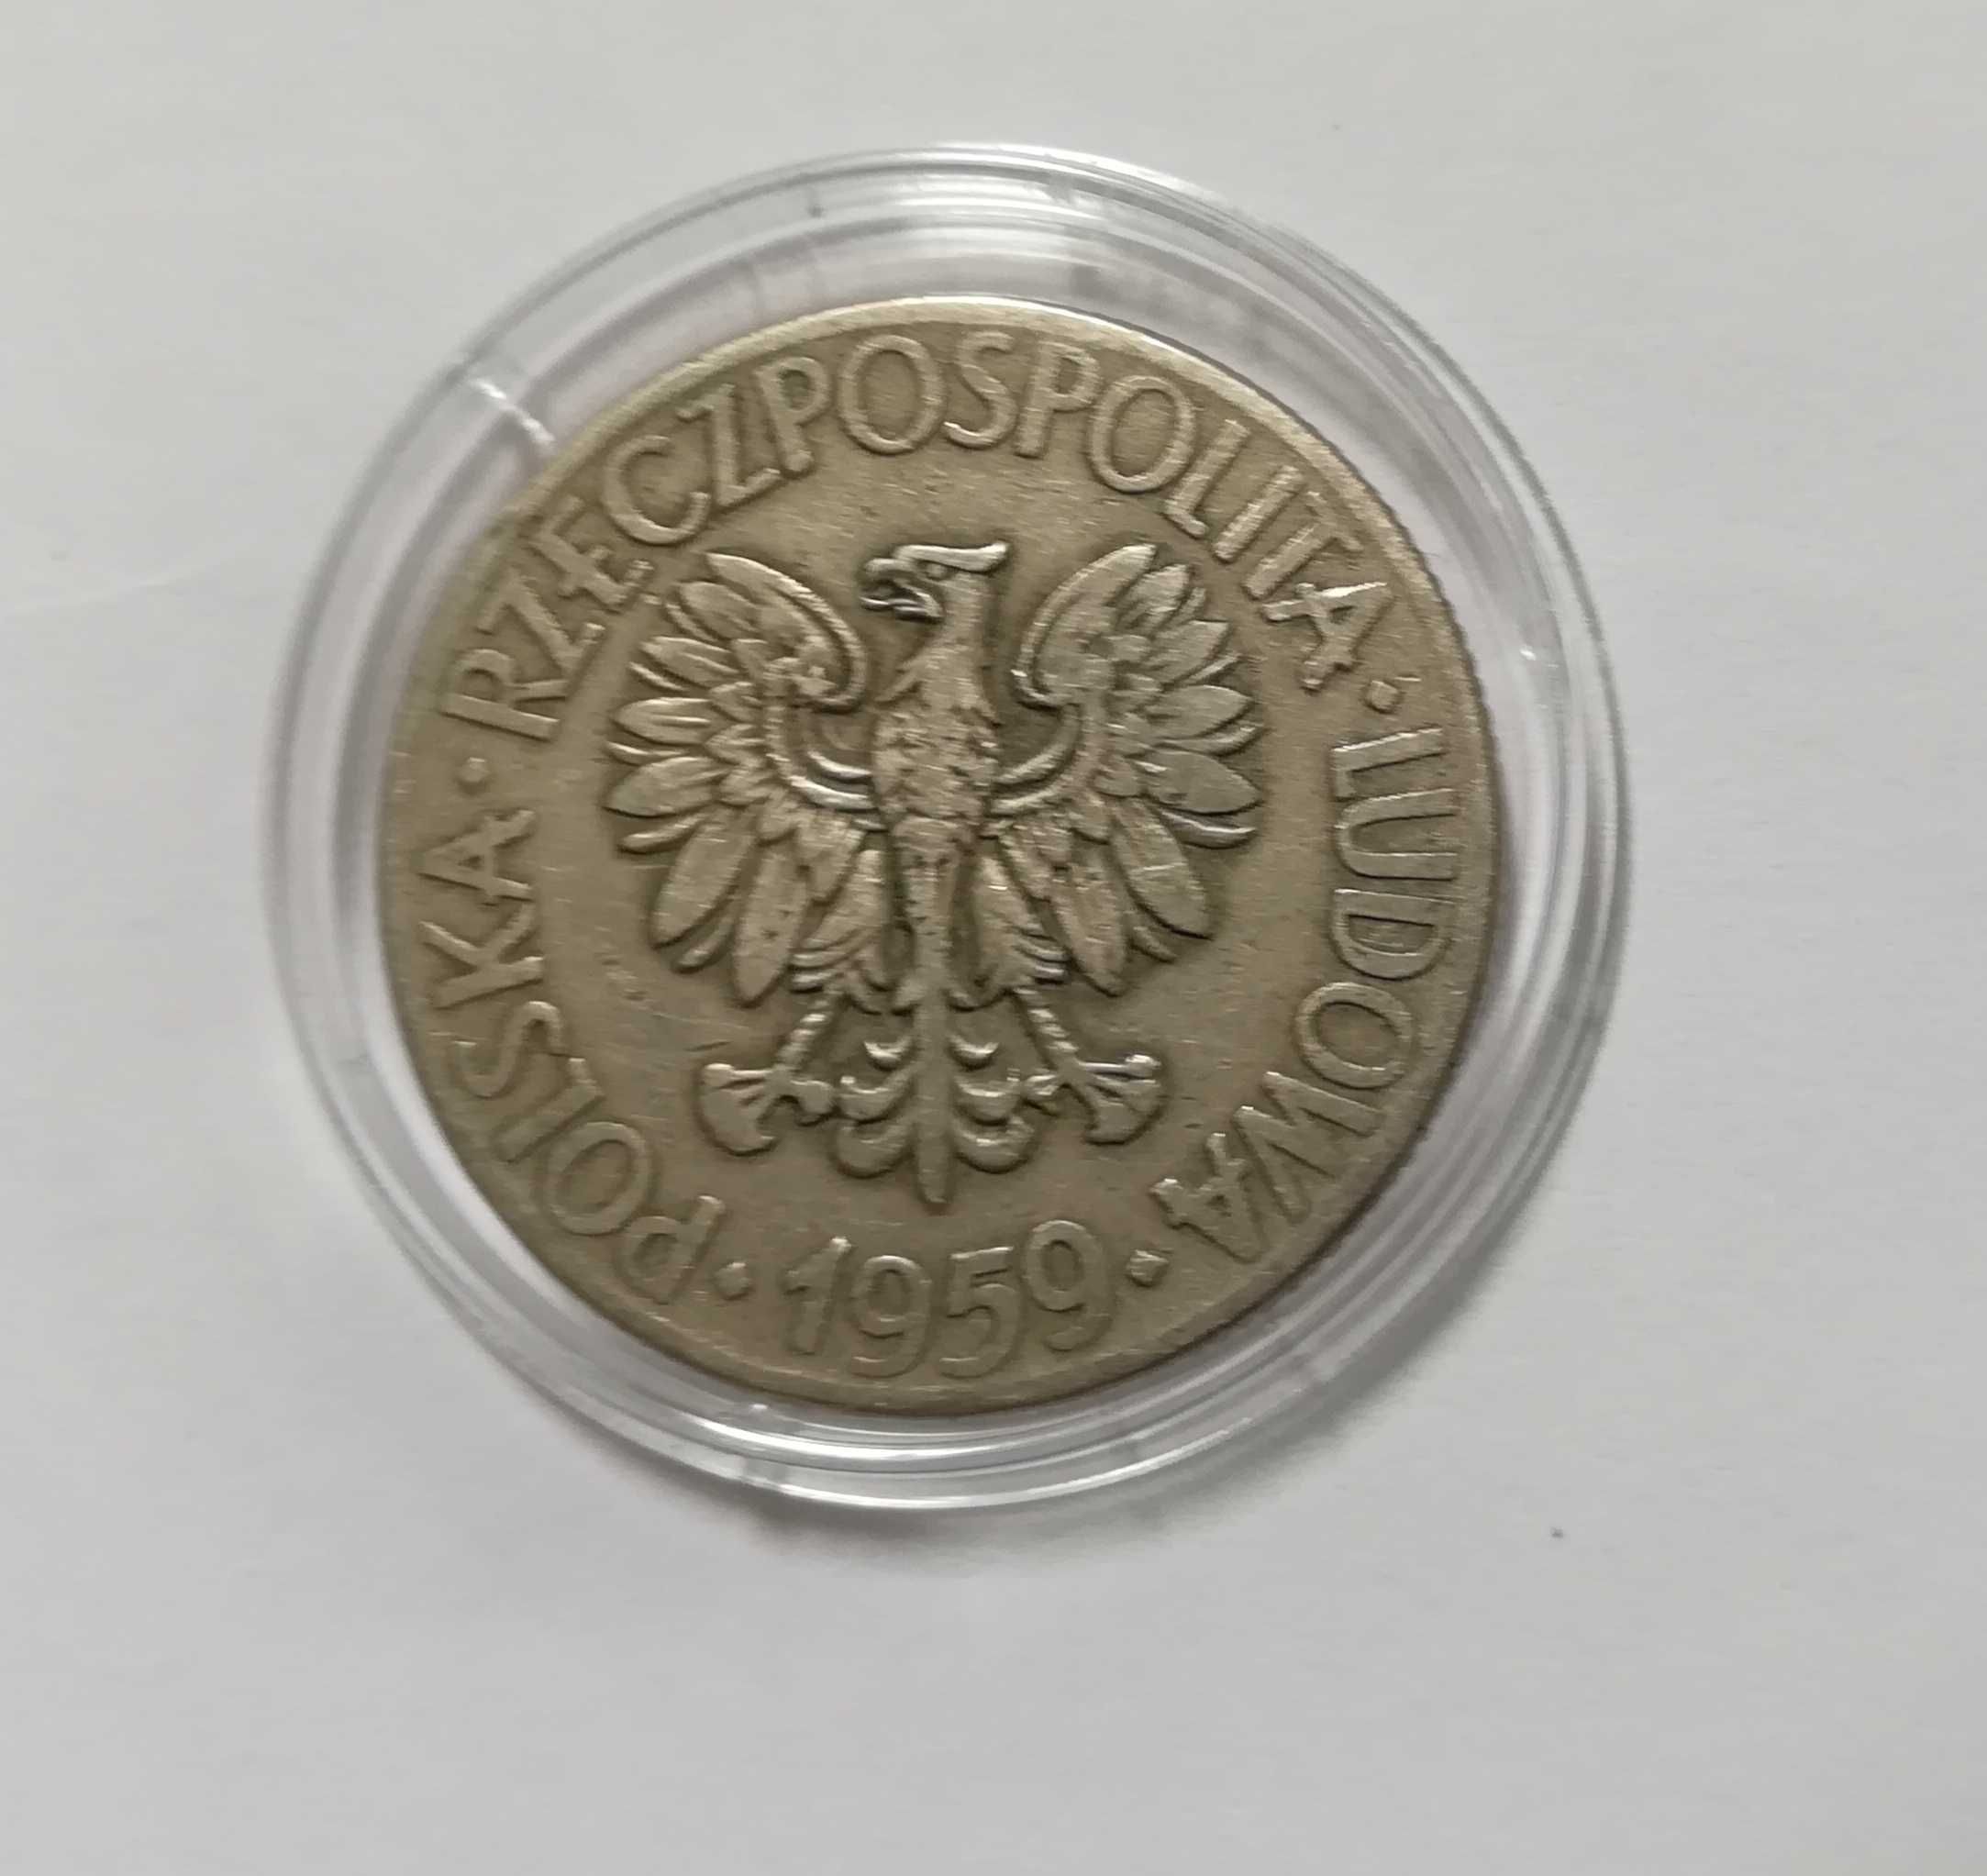 Moneta 10 zł T. Kościuszko z 1959 r. Stan doskonały, godny polecenia.